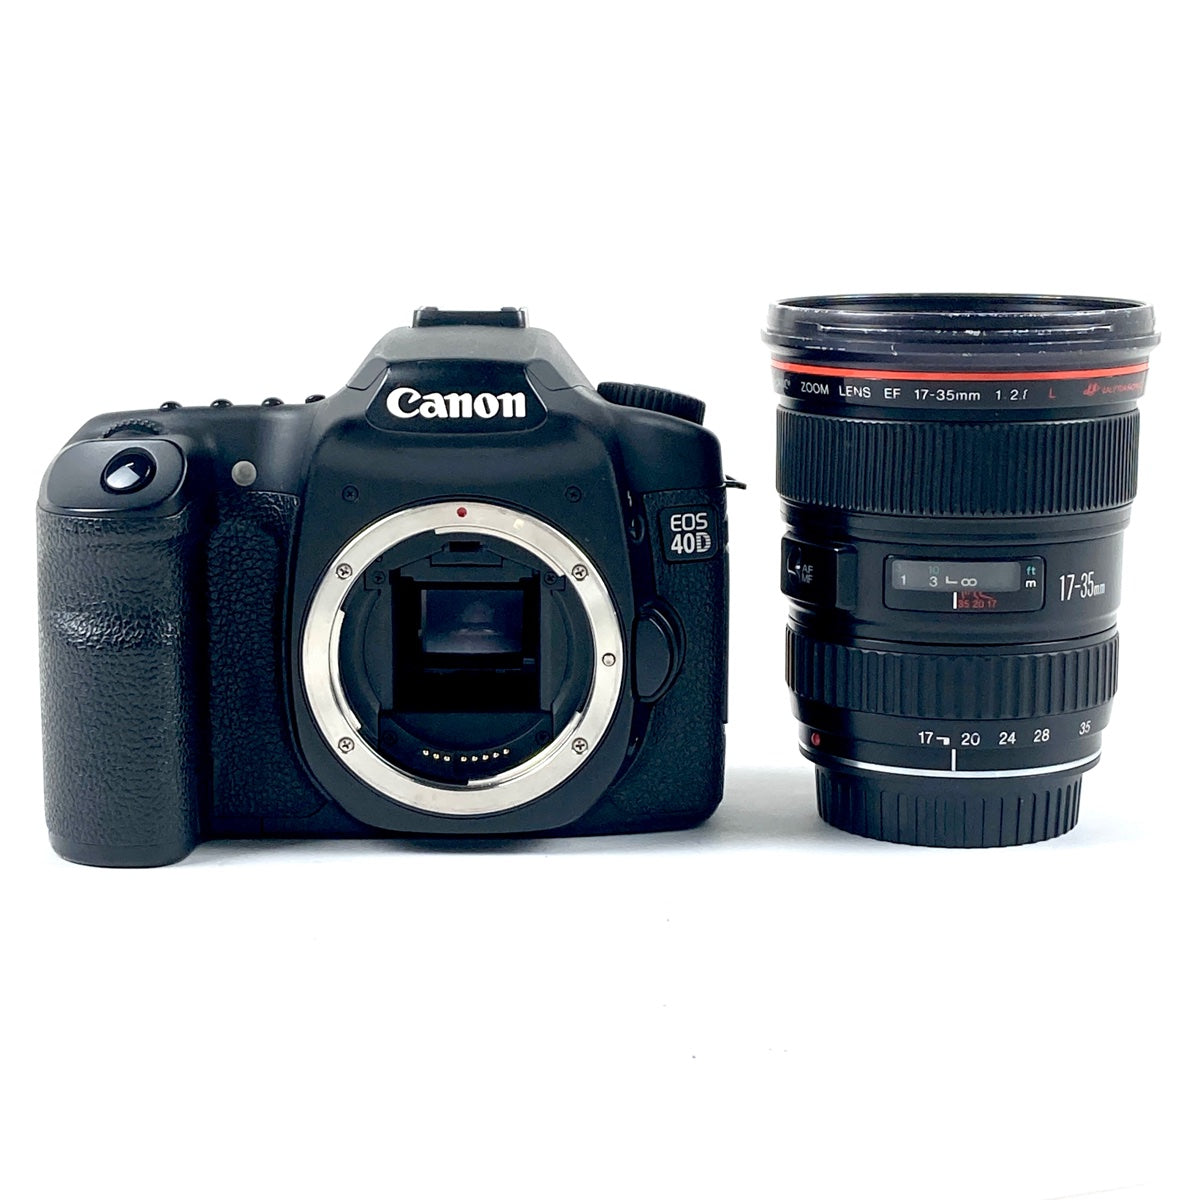 キヤノン Canon EOS 40D + EF 17-35mm F2.8L USM［ジャンク品］ デジタル 一眼レフカメラ 【中古】